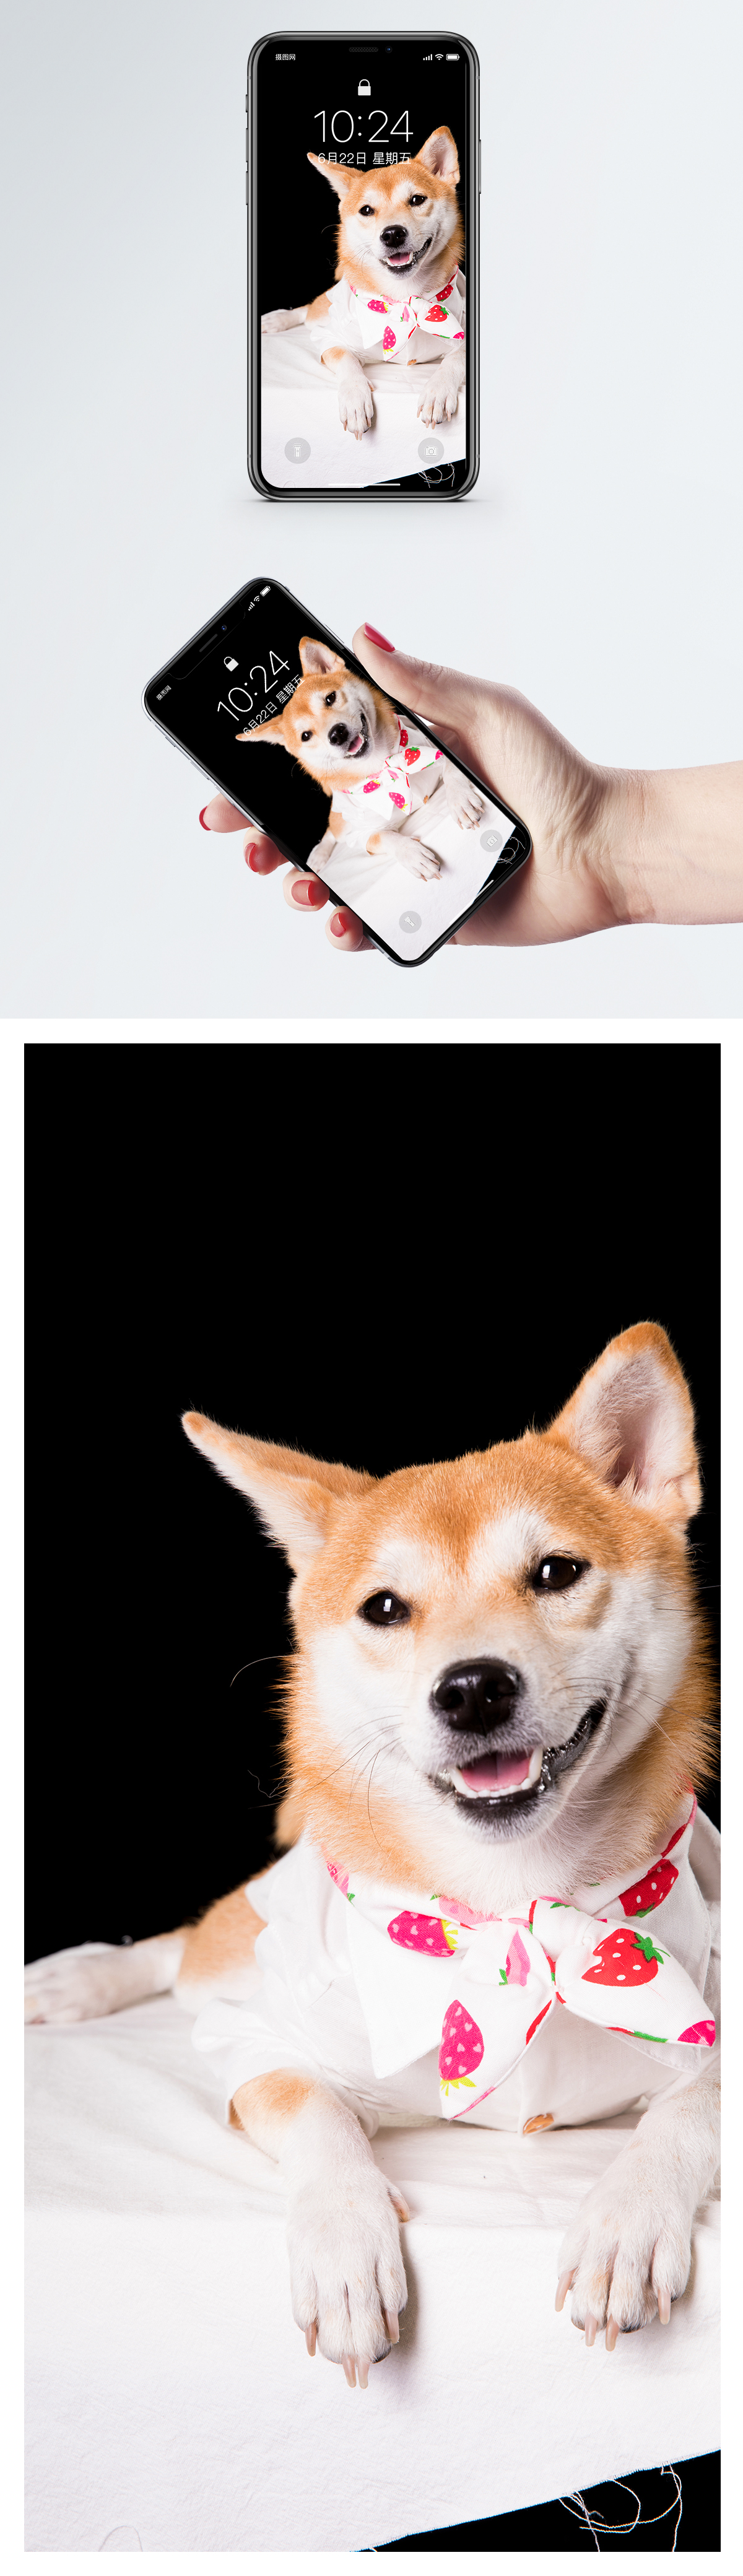 柴犬犬モバイル壁紙イメージ 背景 Id Prf画像フォーマットjpg Jp Lovepik Com